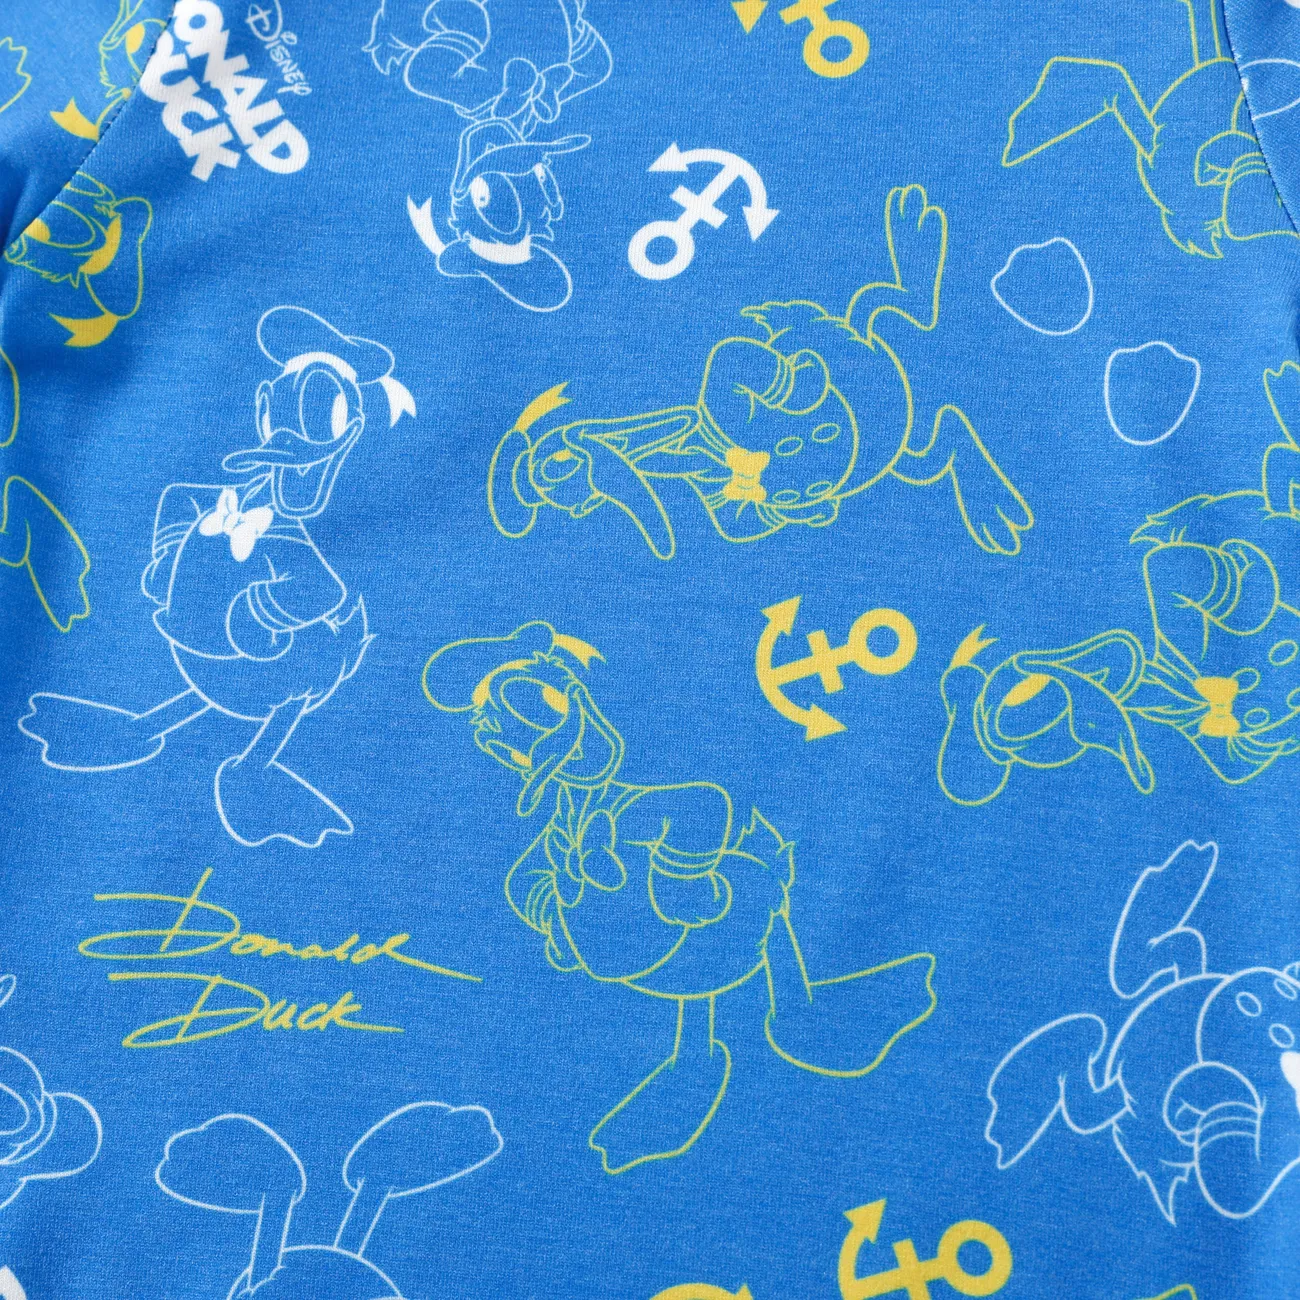 Disney Mickey and Friends 嬰兒 中性 貼袋 童趣 短袖 連身衣 藍色 big image 1